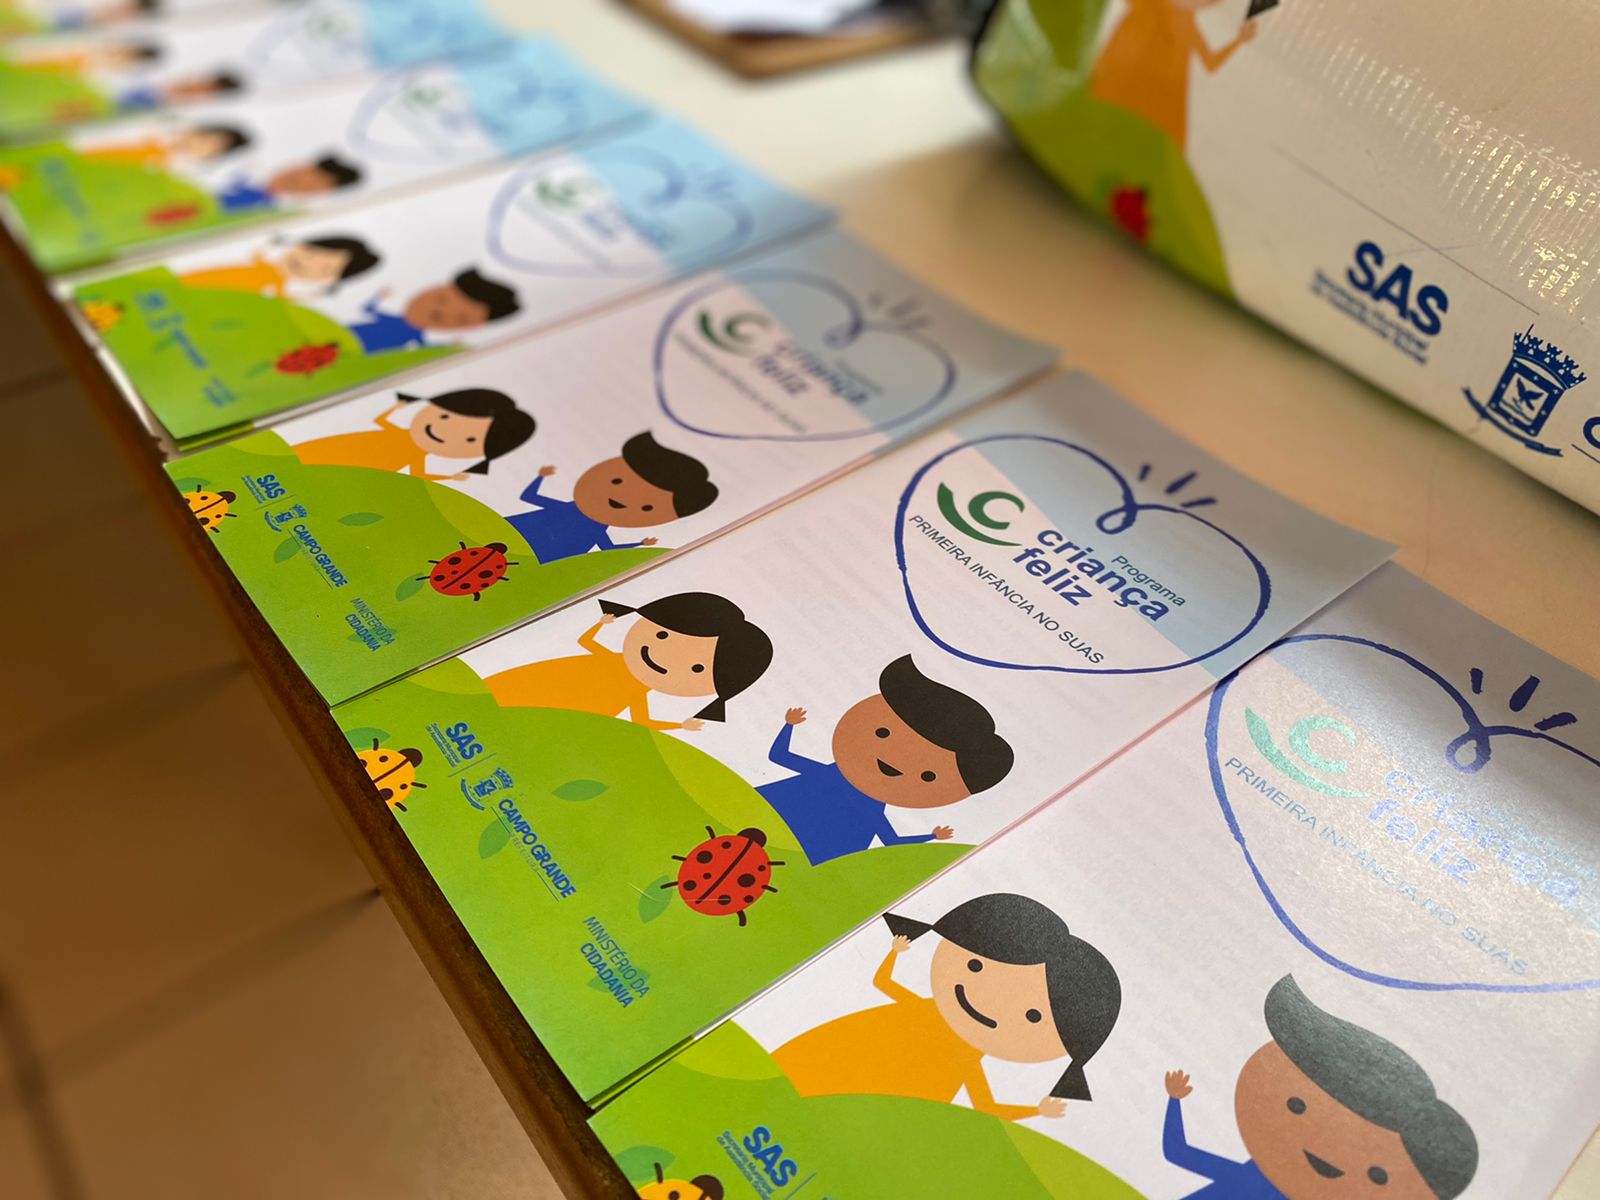 Kits de livros estimulam desenvolvimento e fortalecem diálogo entre pais e filhos do Programa Criança Feliz